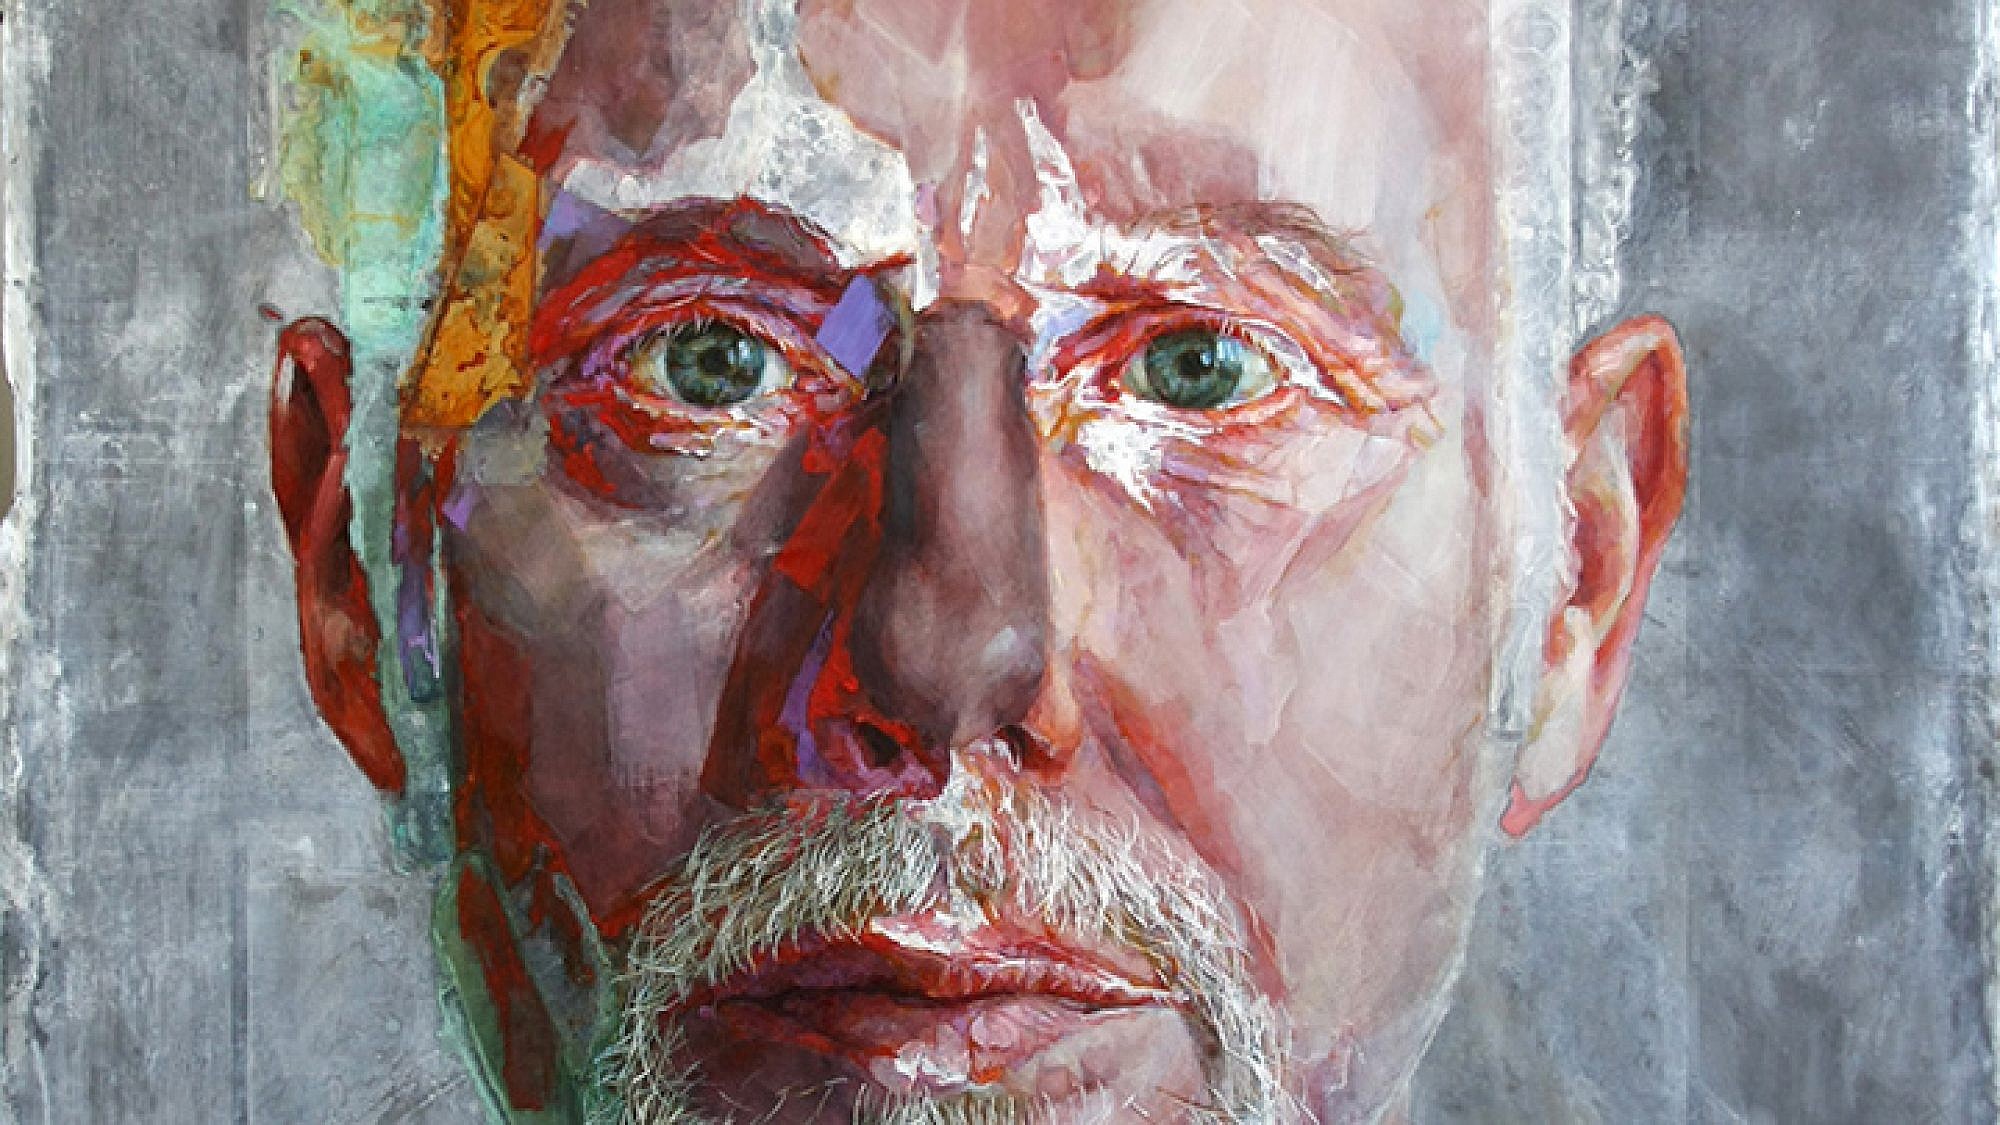 תערוכת יחיד לאמן ההולנדי פיט ון דן בוג בגלריה זימאק | צילום: יח"צ